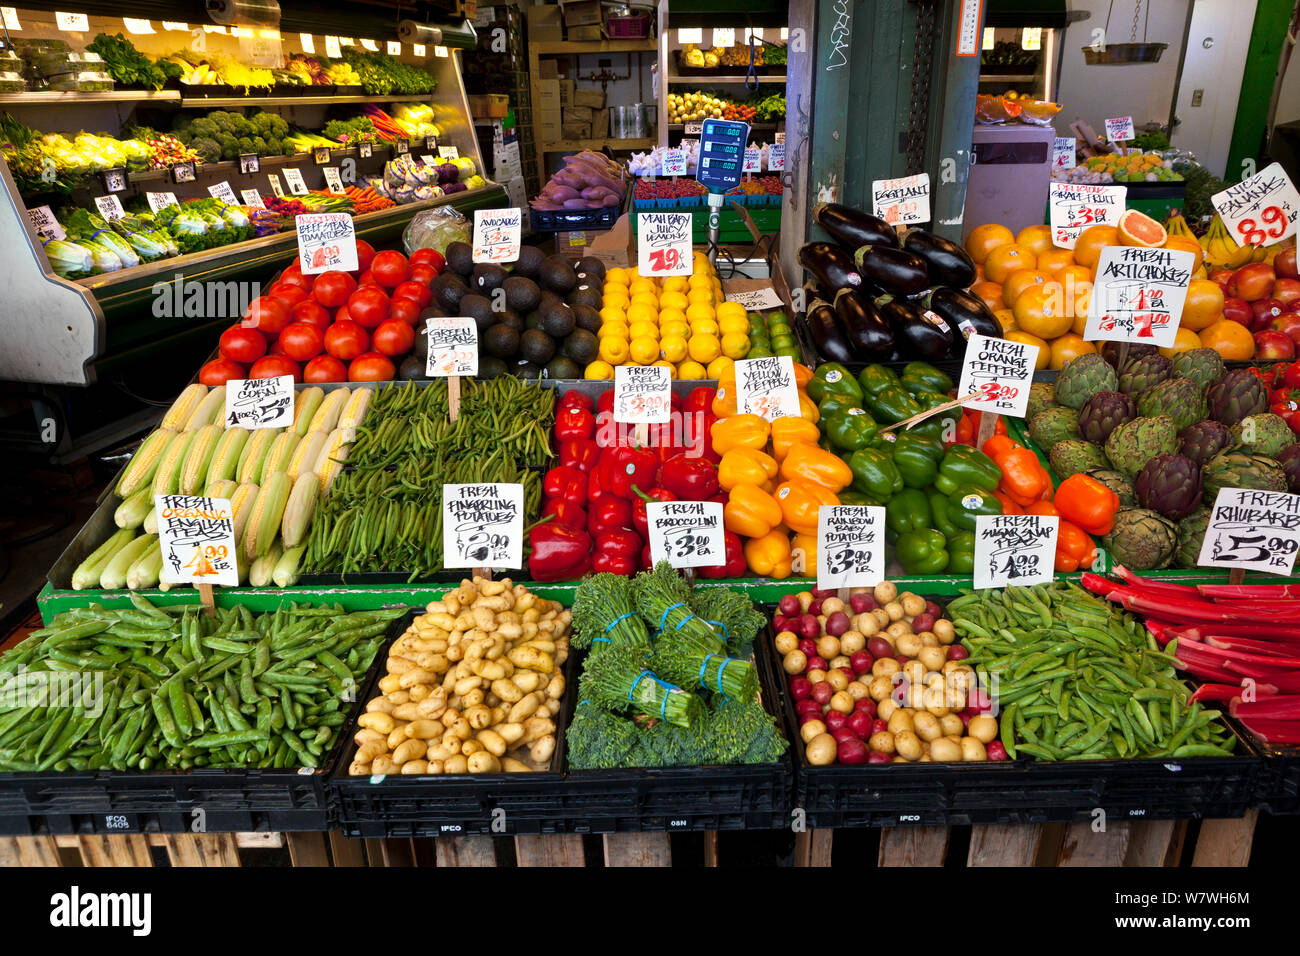 La frutta e la verdura, stand Pike Place Marke, Seattle, Washington, USA, marzo 2014. Foto Stock